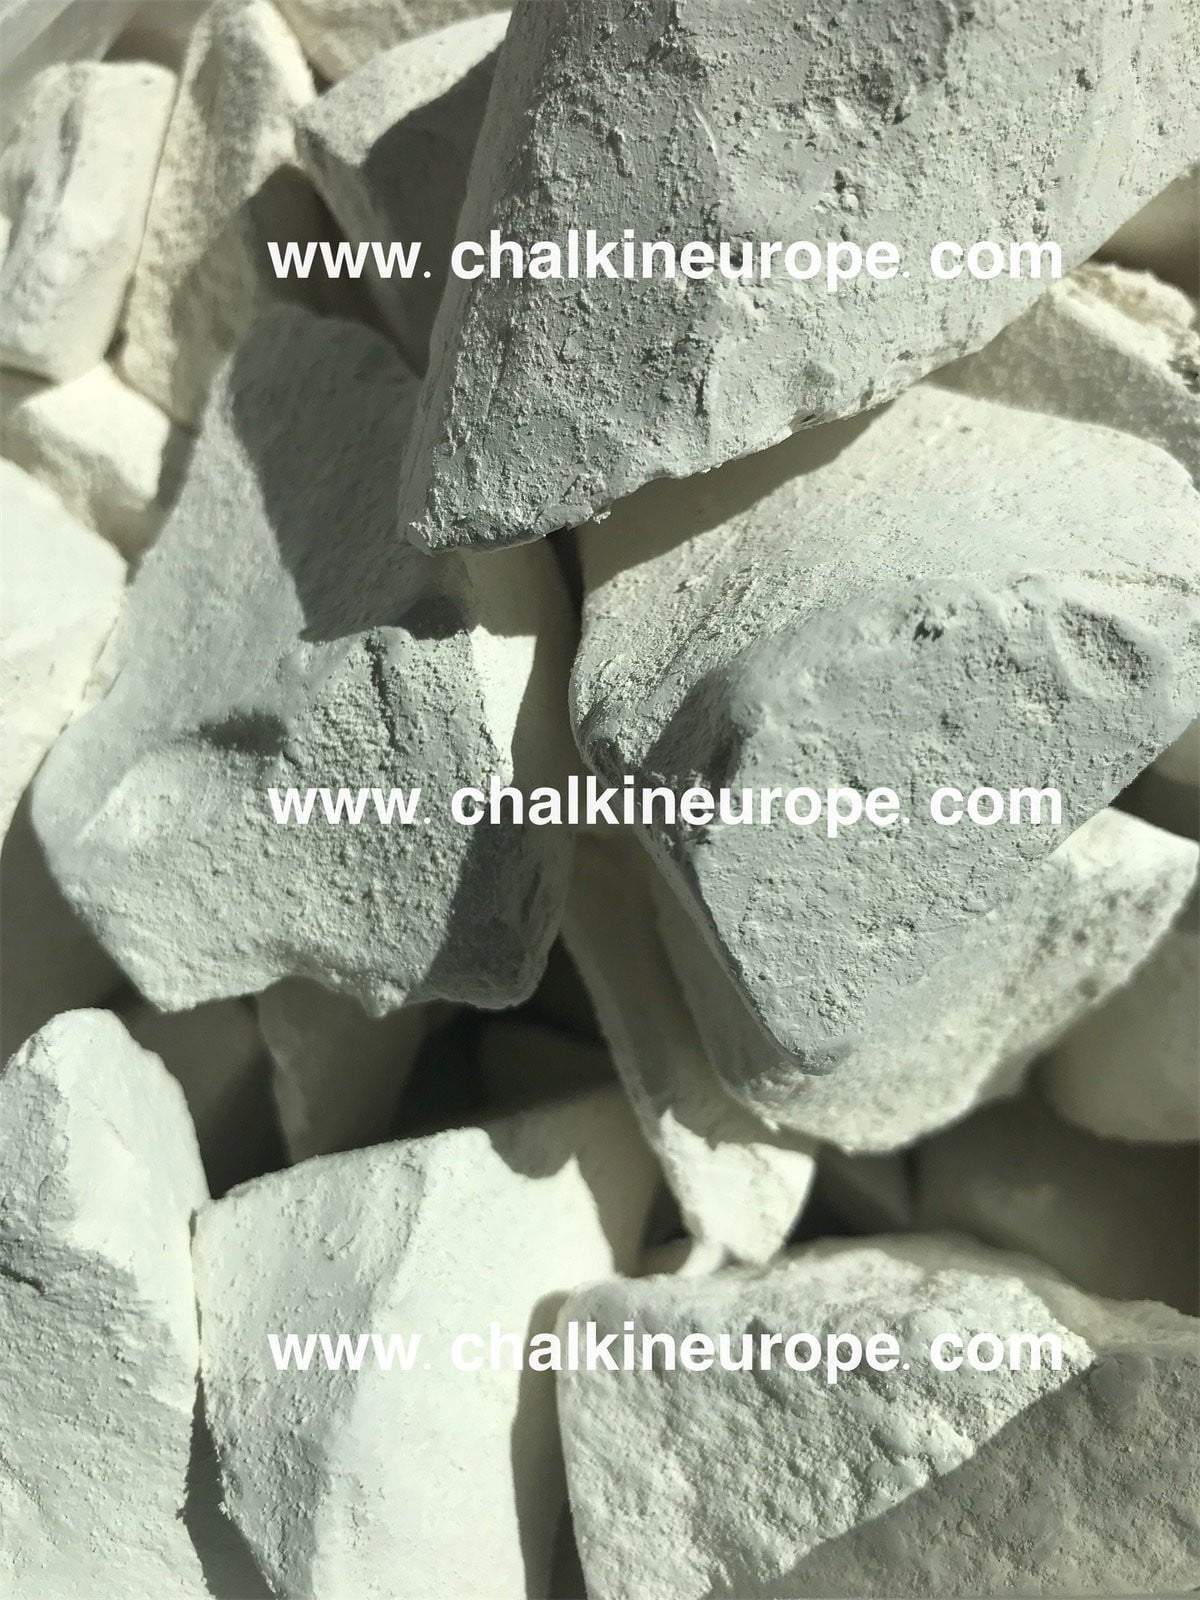 White Mountain Chalk - Chalkineurope